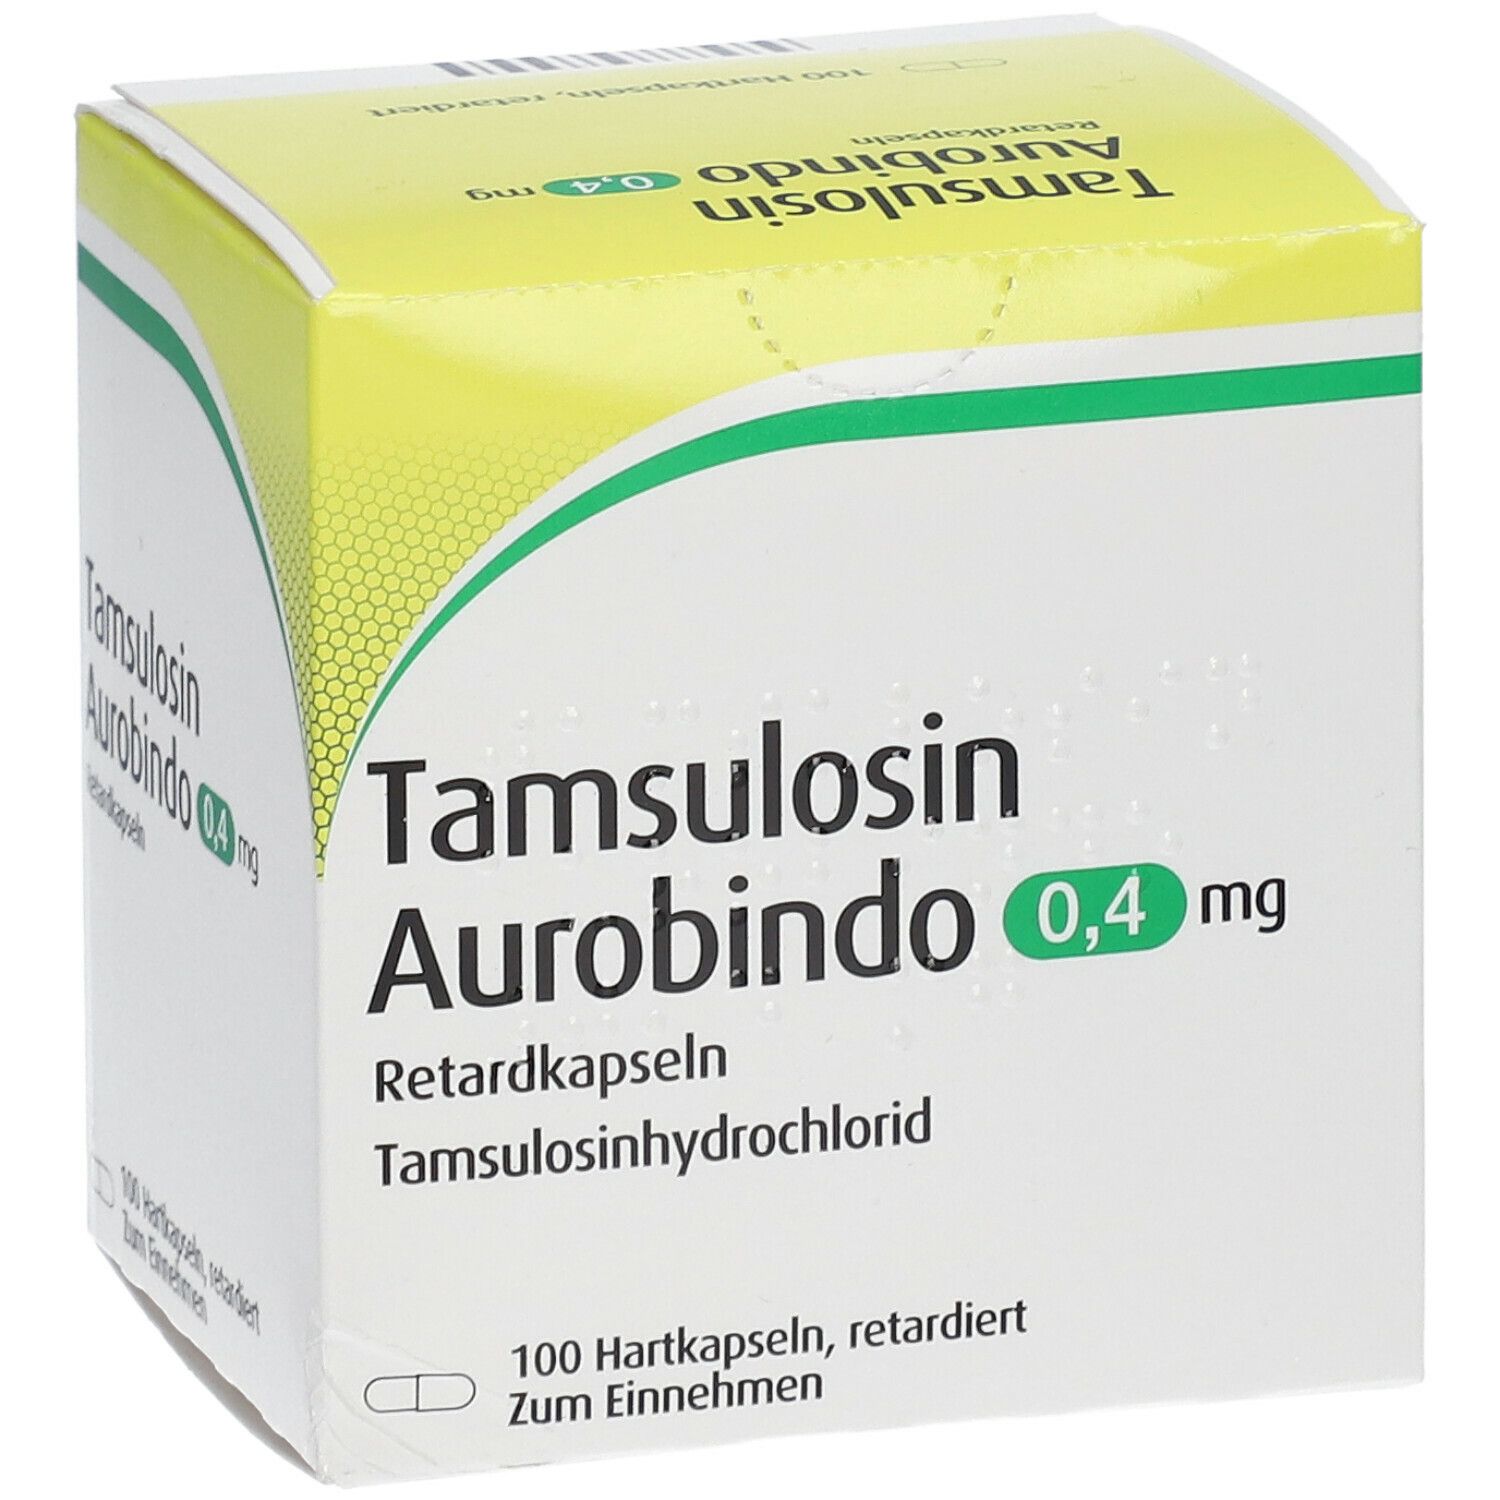 Tamsulosin Aurobindo 0,4 mg